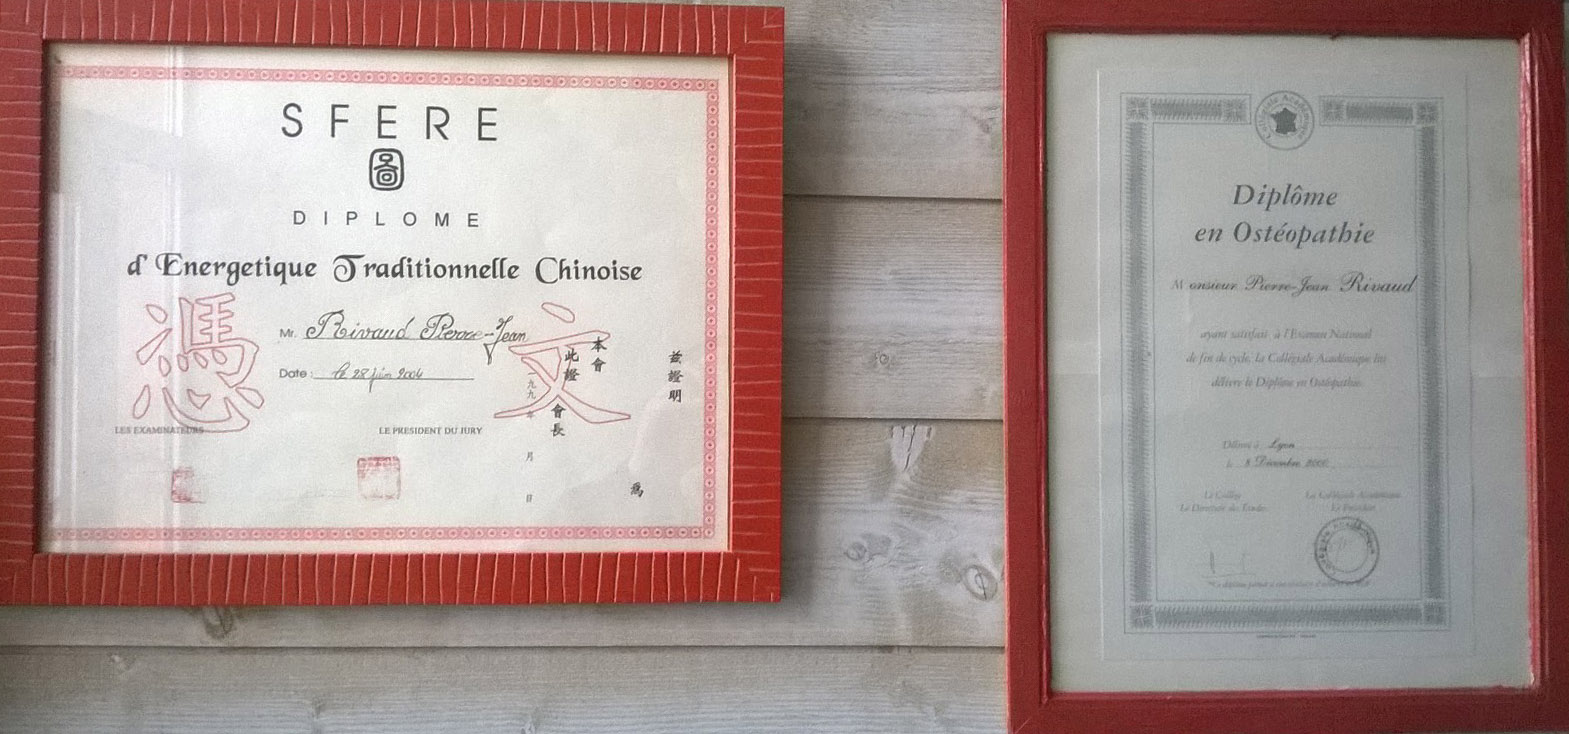 diplôme medecine chinoise-osteopathie-pierre jean Rivaud-Arles